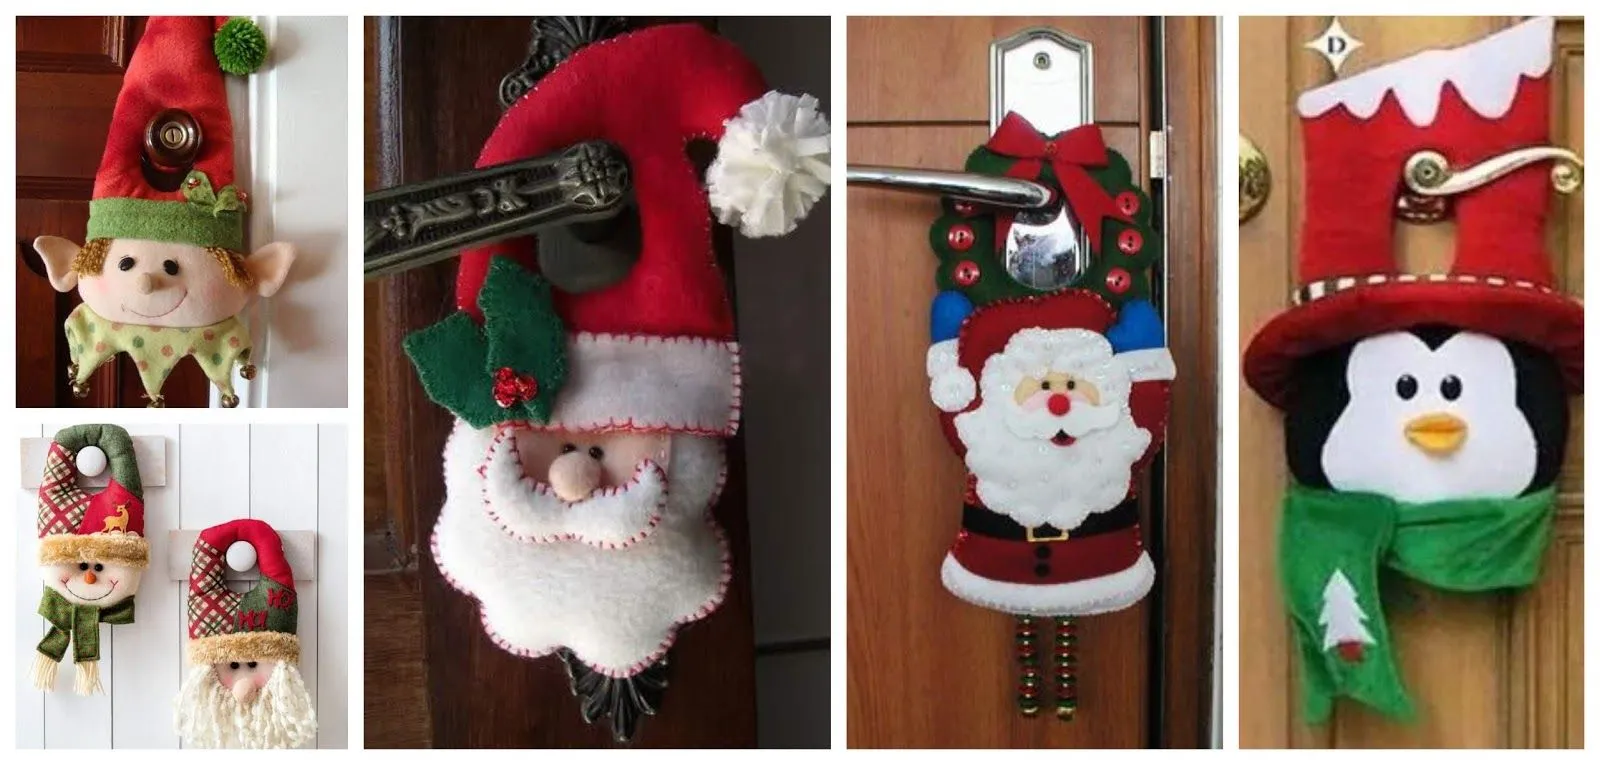 Decora tu puerta con lindos picaportes navideños en fieltro ~ Solountip.com